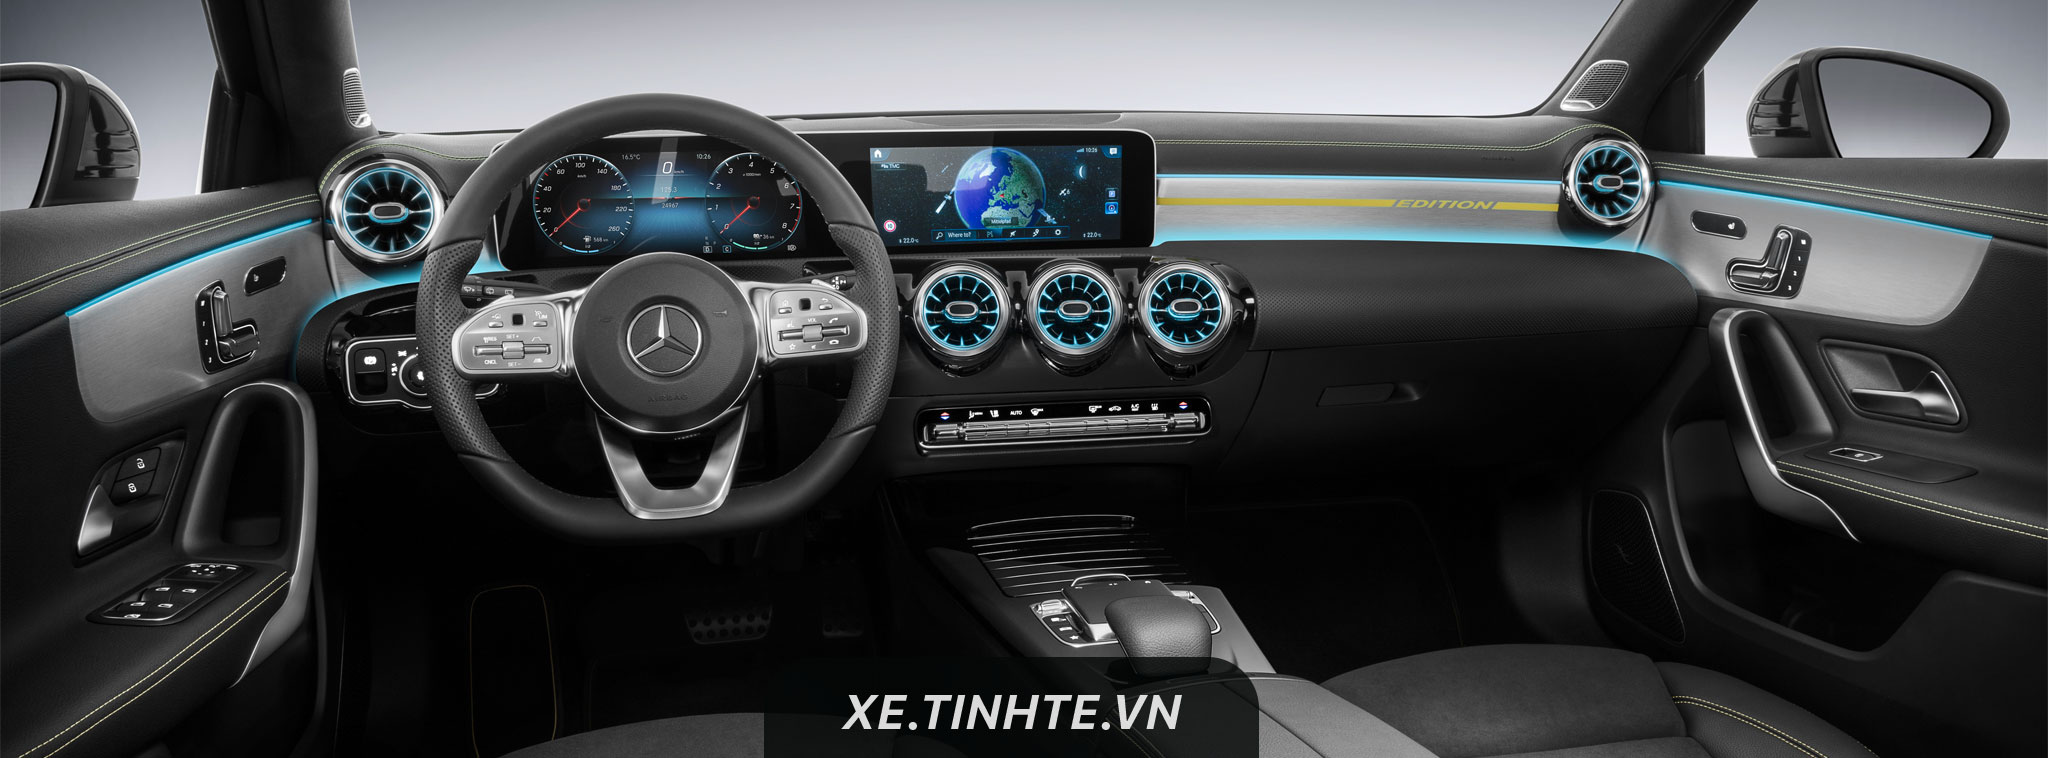 Mercedes-Benz hé lộ nội thất của dòng xe A-Class mới: thể thao, hiện đại và rộng rãi hơn